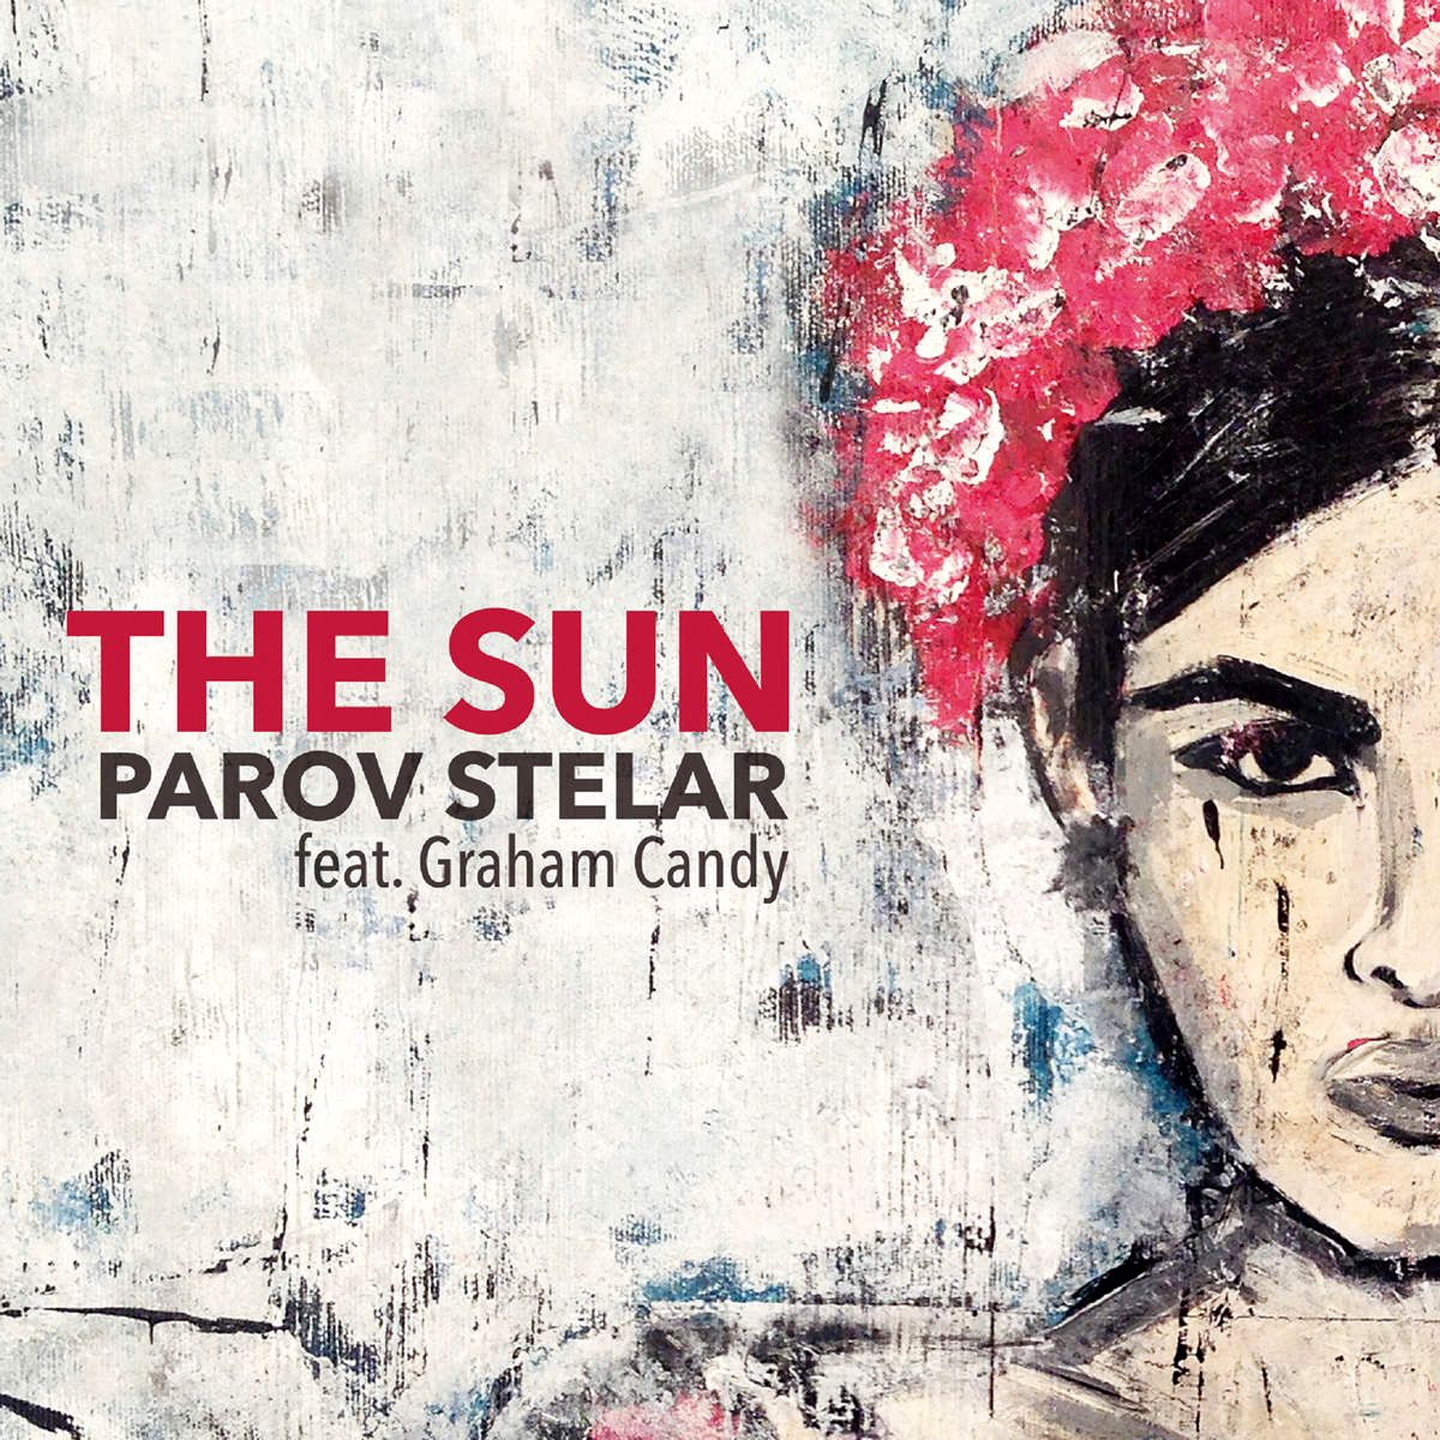 The Sun (Gamper & Dadoni Remix)